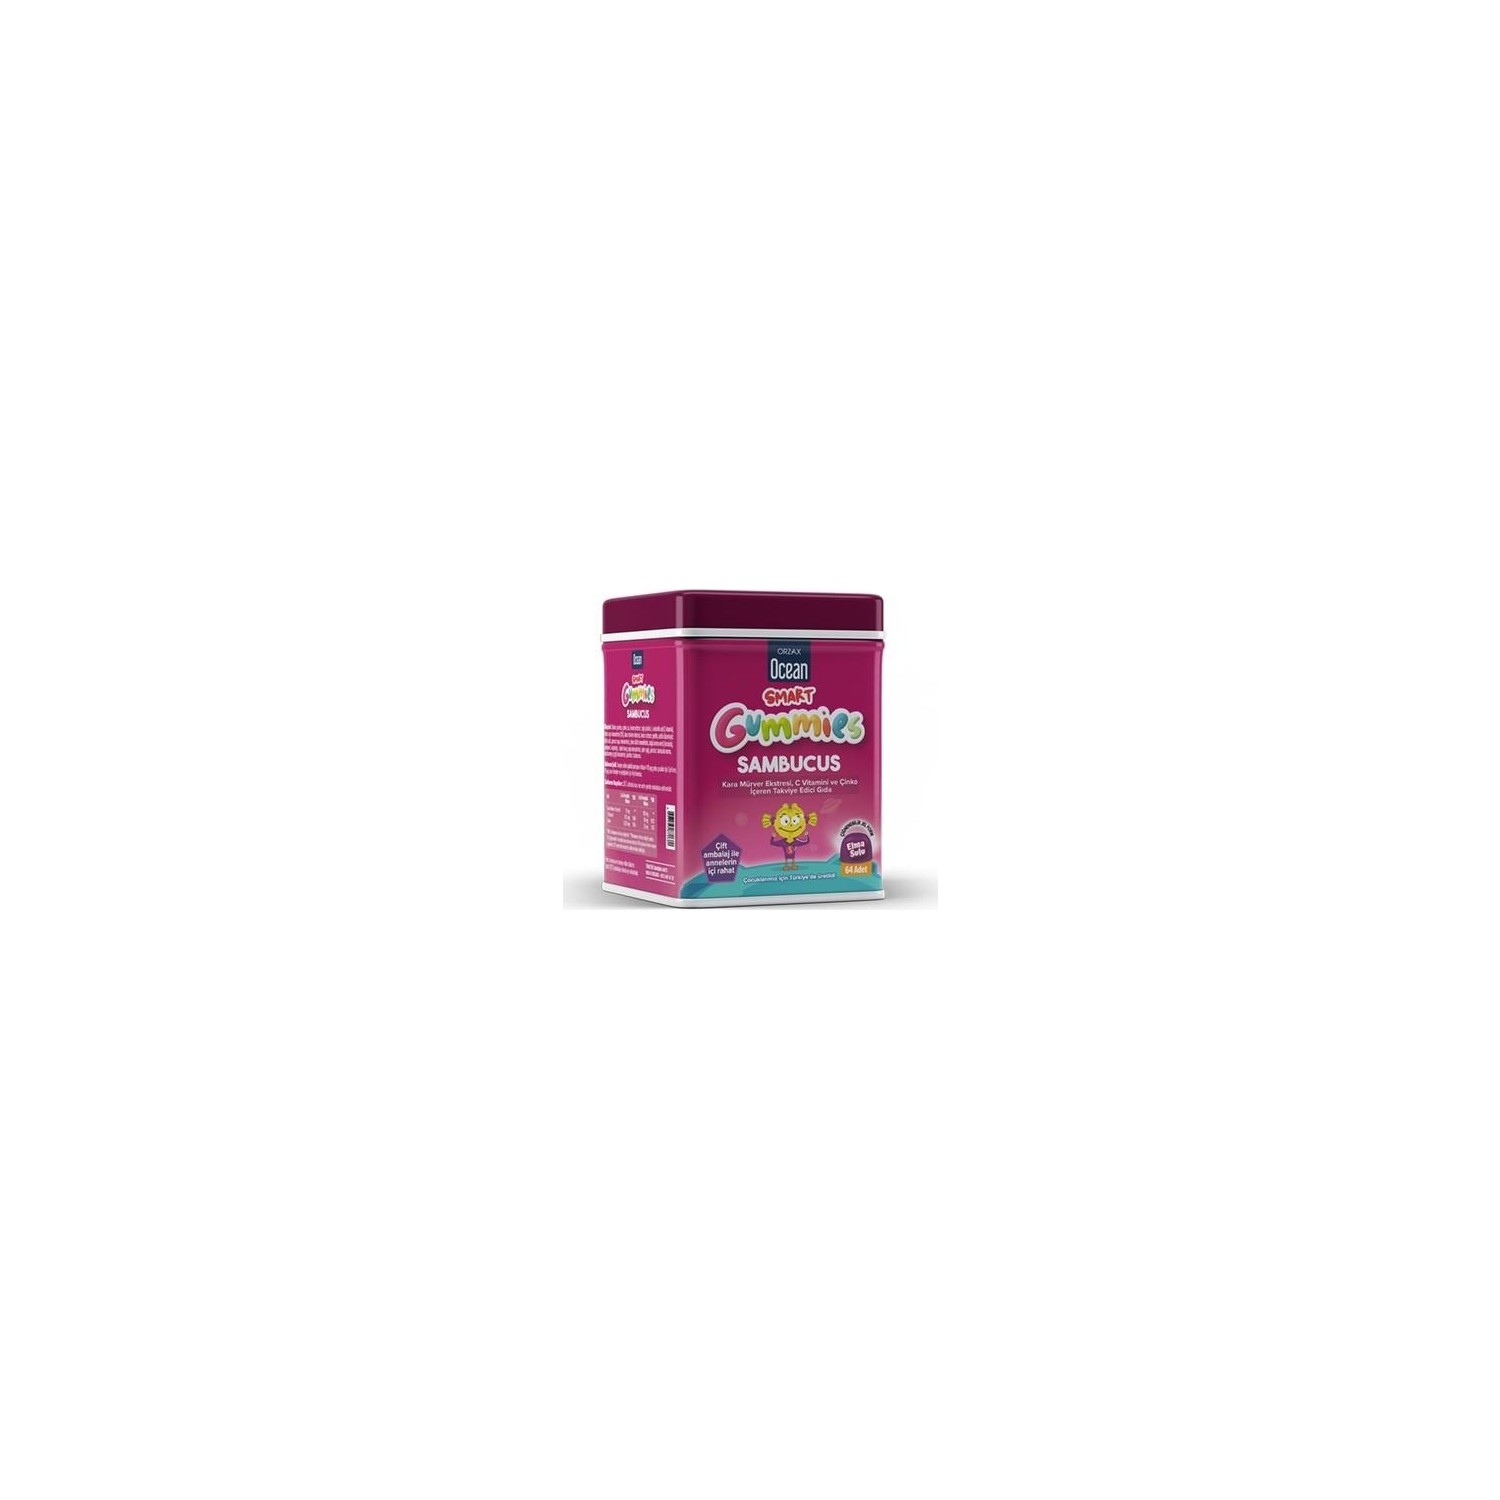 Мультивитамины Orzax Smart Gummies Sambucus, 64 таблетки кисель детский витамины кальций для детей со вкусом малины витошка abc healthy food 25г